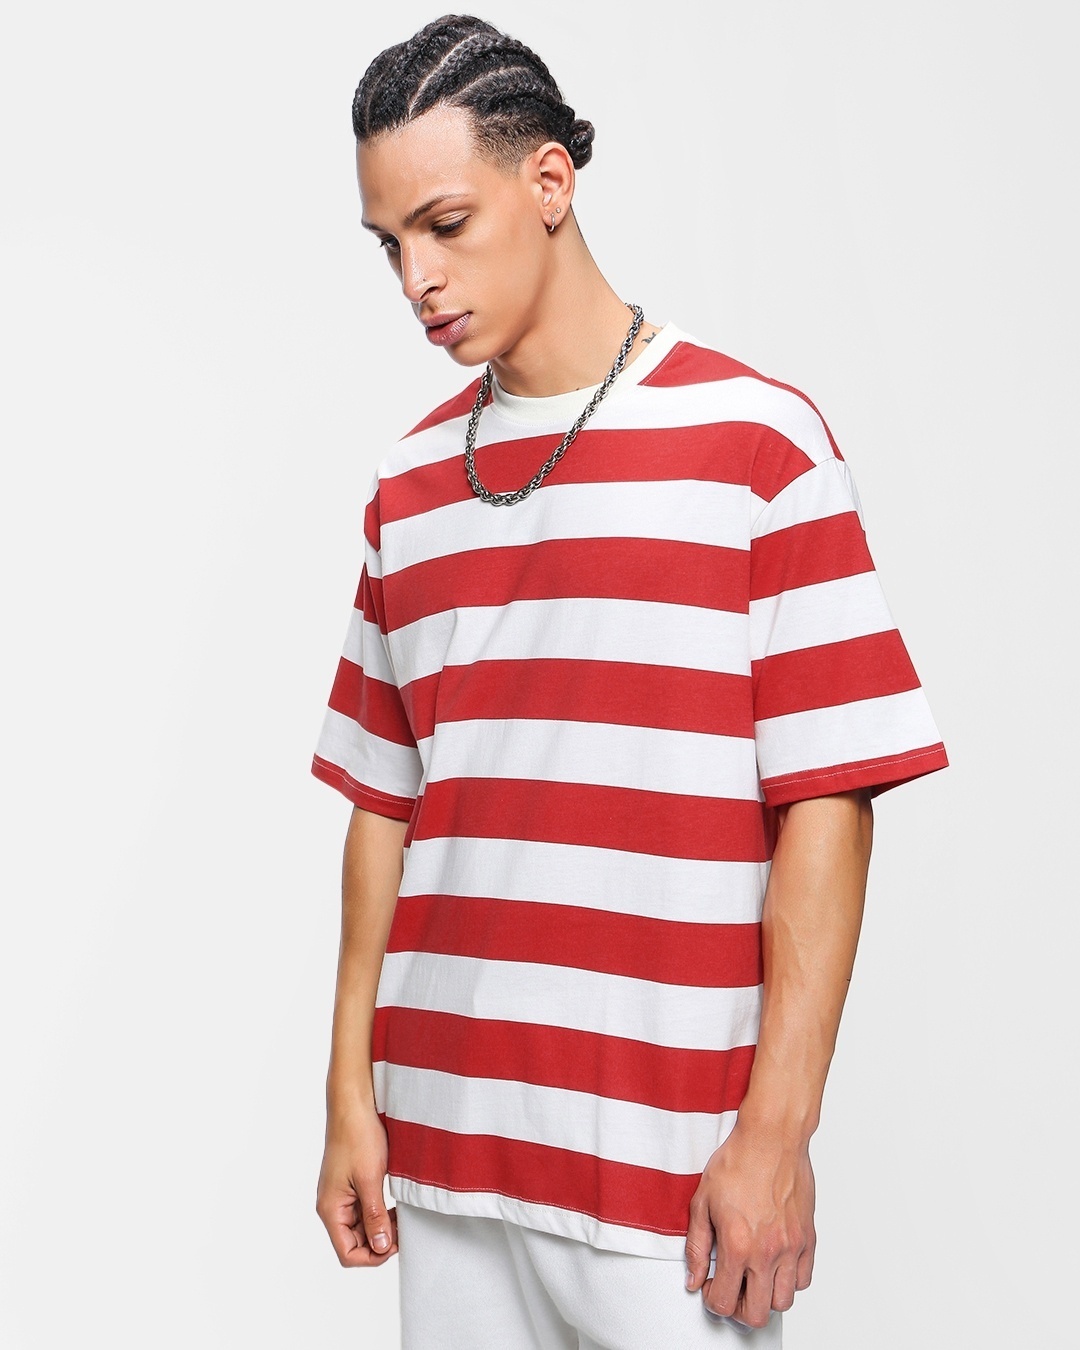 Buy Men's White & Striped Oversized T-shirt for Men at Bewakoof